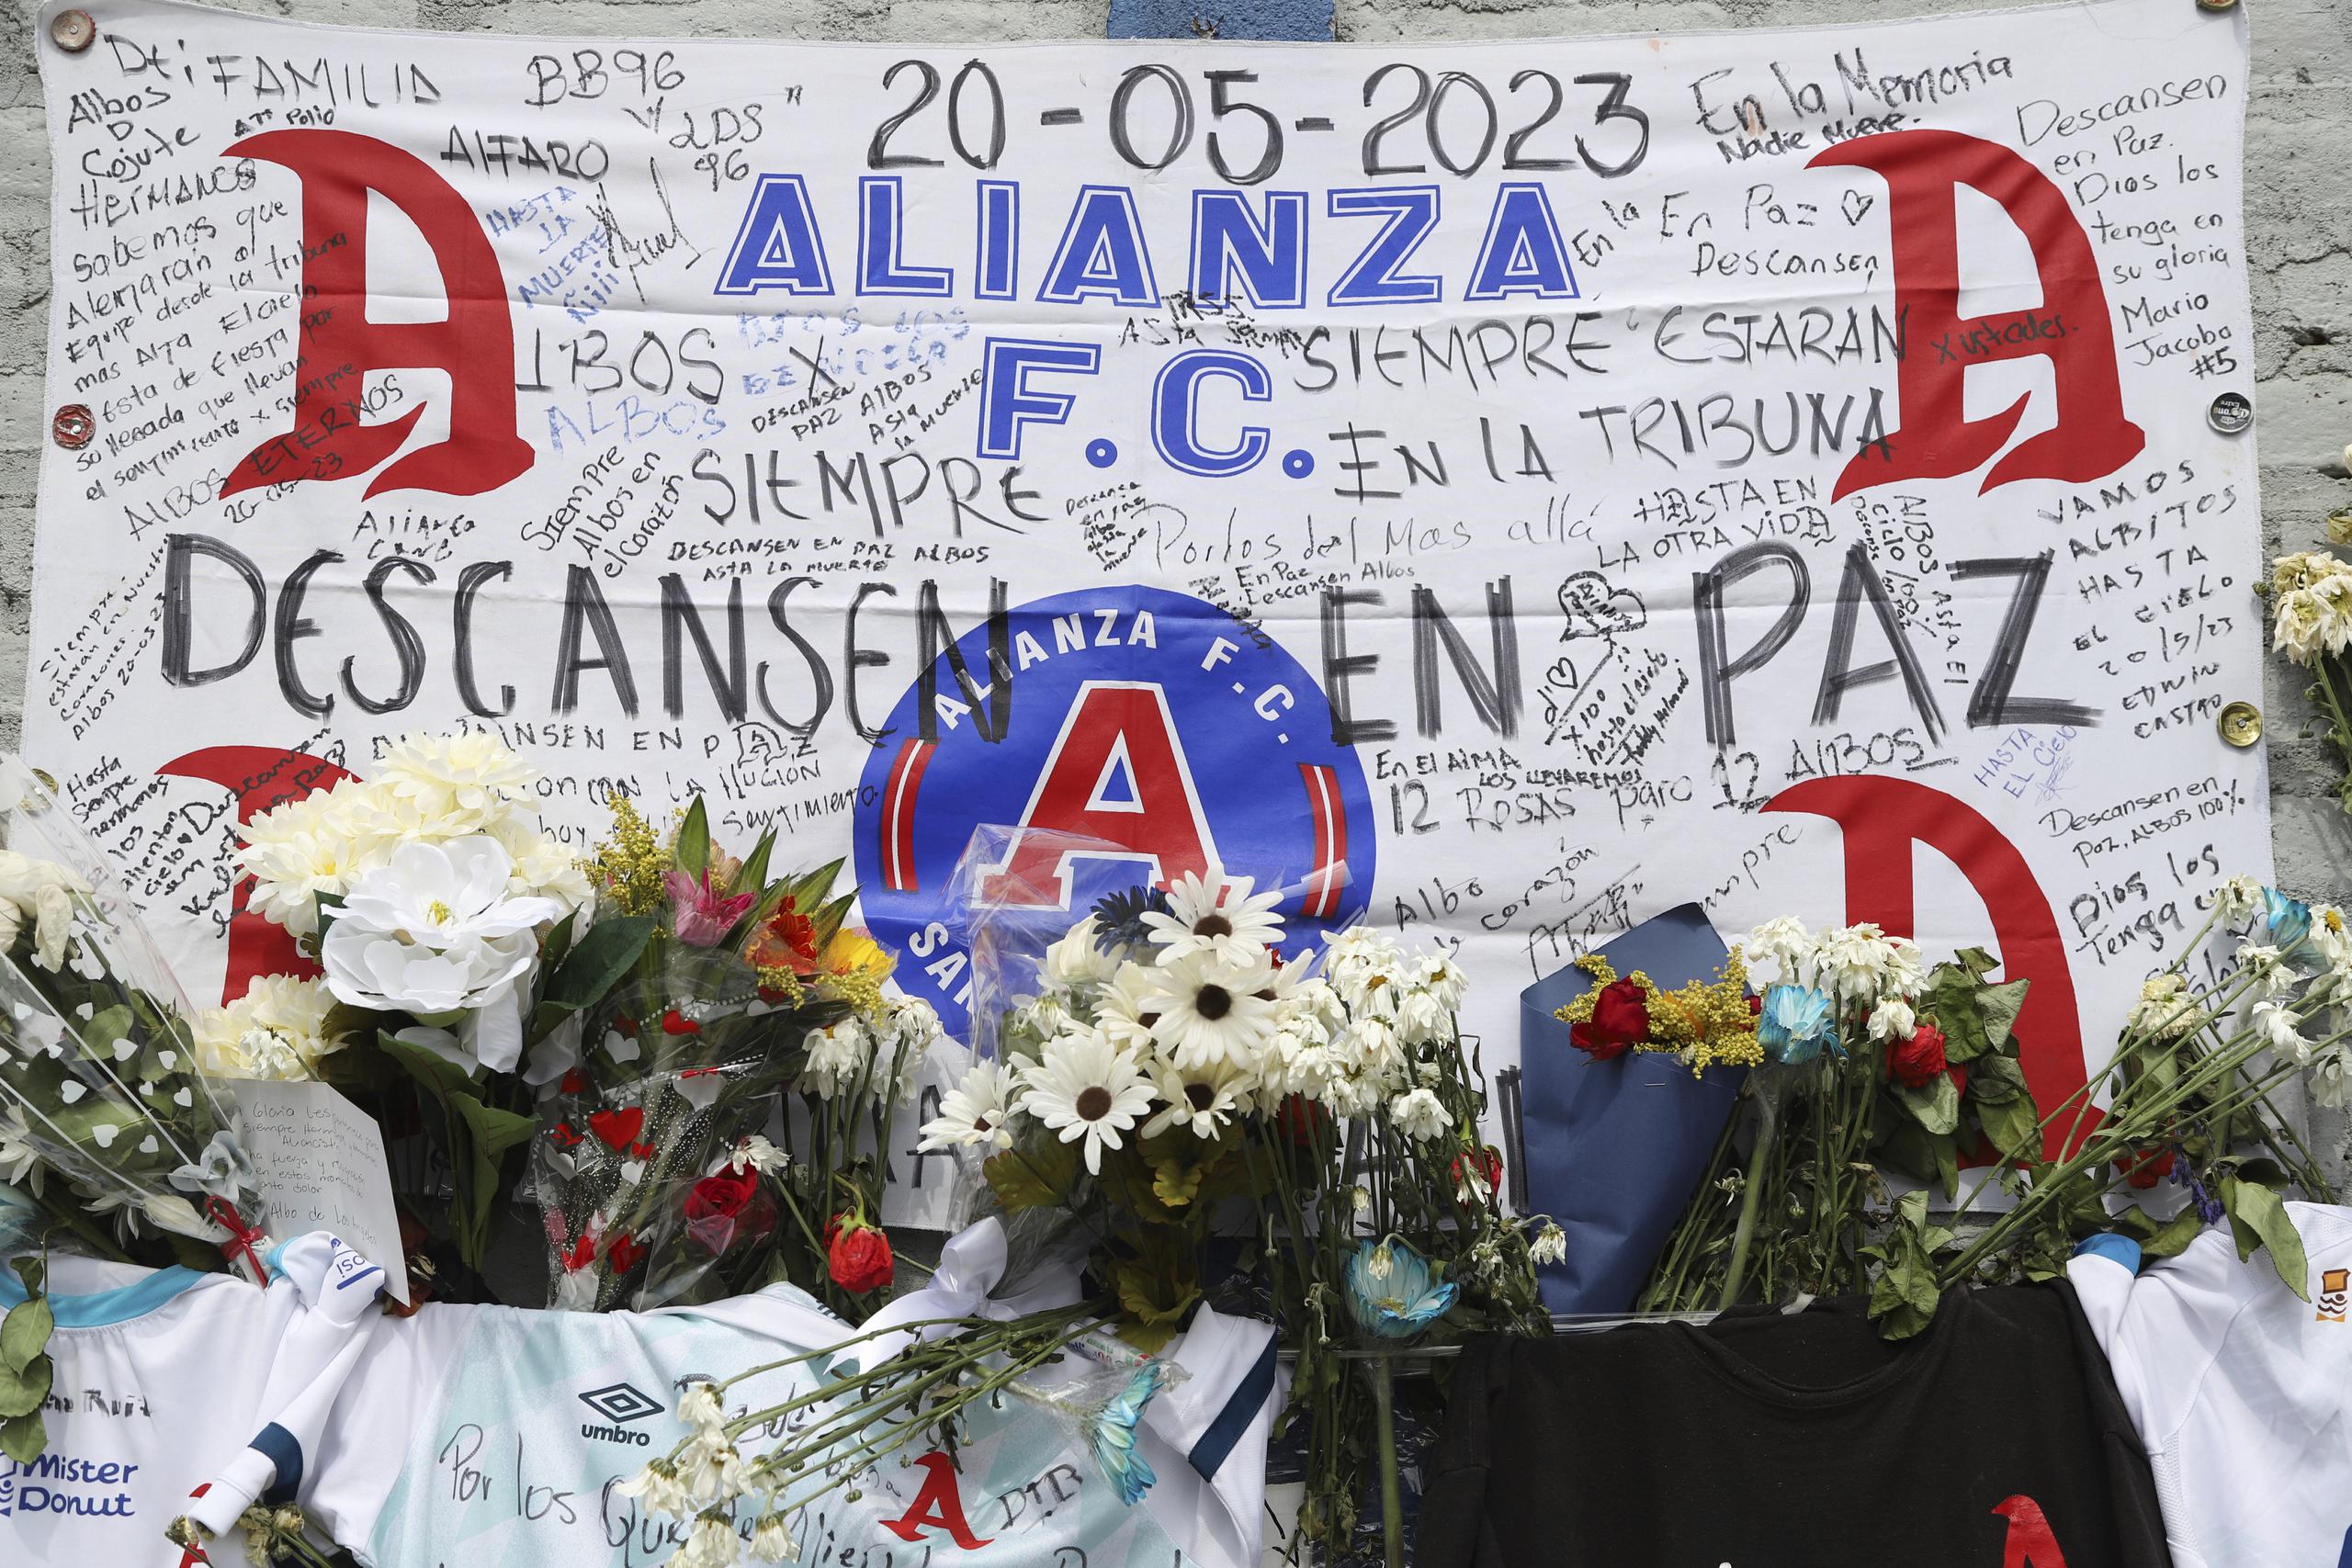 En la foto del lunes 22 de mayo de 2023 se aprecia un altar erigido por los aficionados al fútbol que perecieron en el Estadio Cuscatlán de San Salvador.